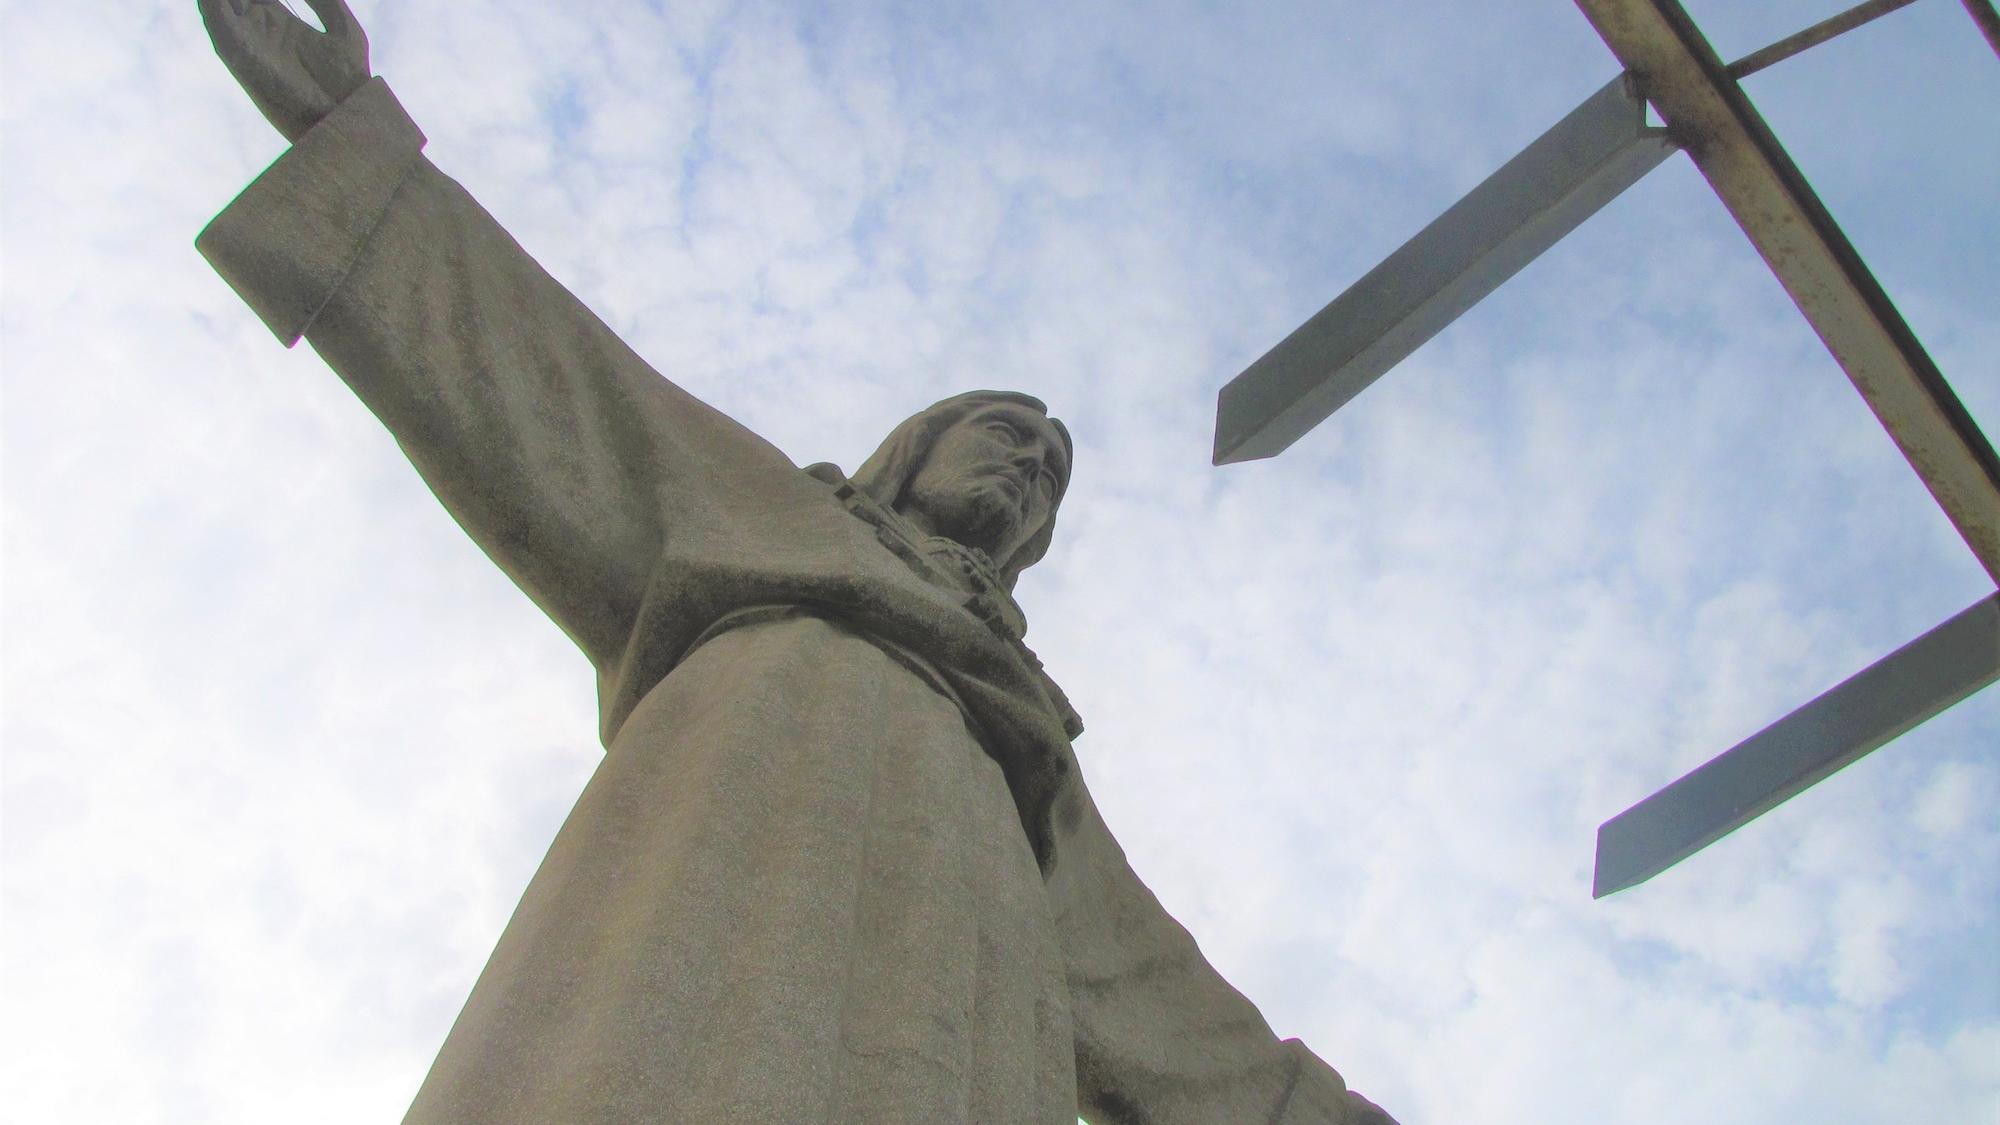 Monumento Cristo Rei – Rio am Tejo. (c) Andreas Drouve